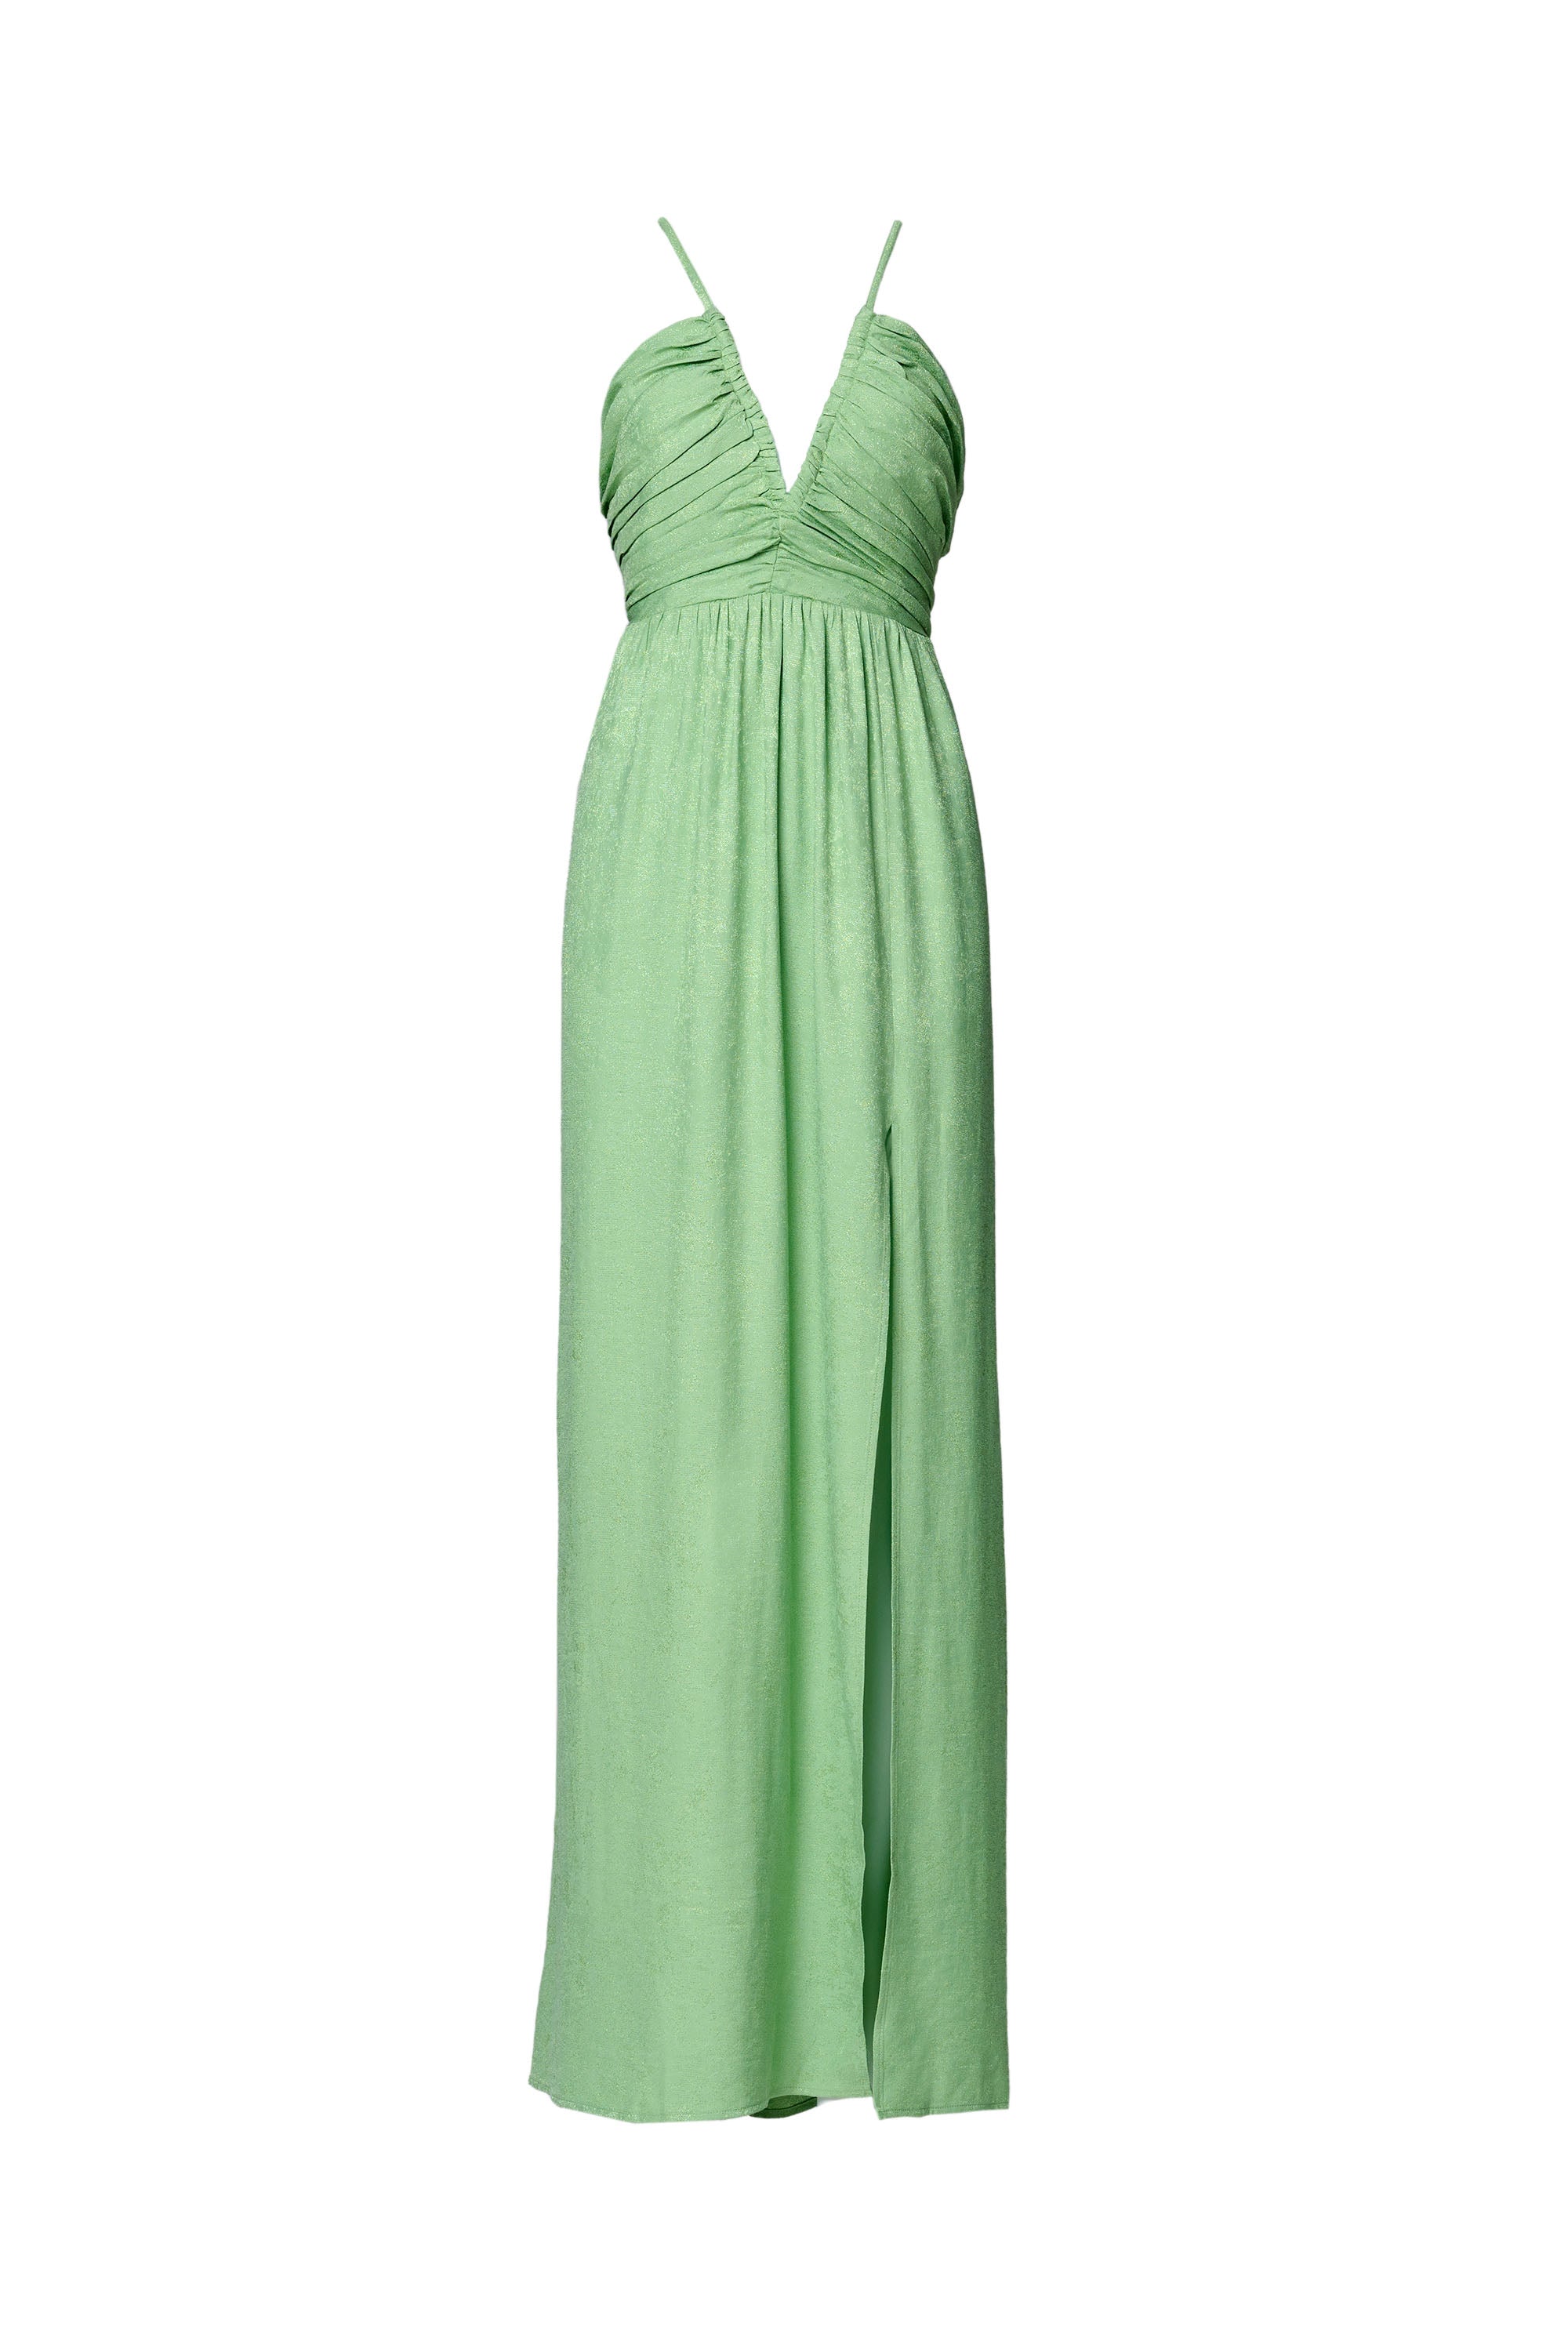 Dress dress – green Shop in Summer Maxi –